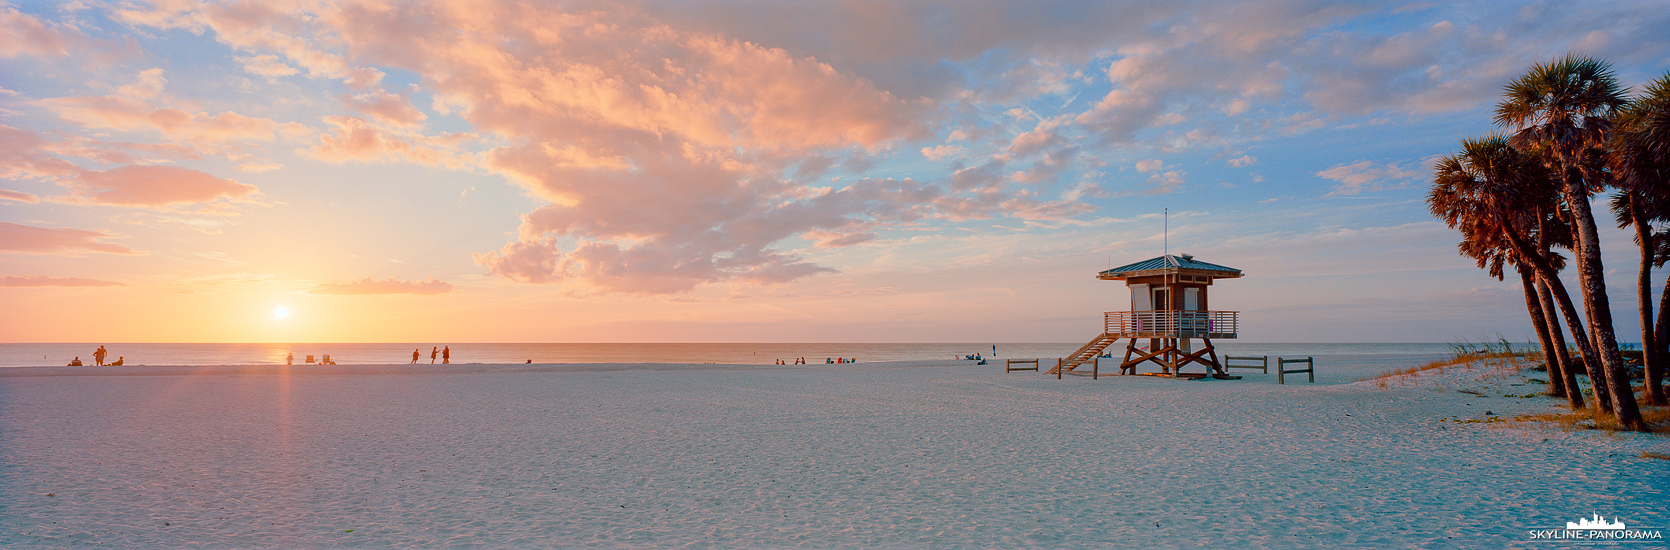 Panorama USA - Florida bietet traumhafte, kilometerlange Strände mit feinem weißen Sand. Hier zu sehen ist der Coquina Beach in Bradenton Beach zum Sunset kurz bevor die Sonne den Horizont berührt.